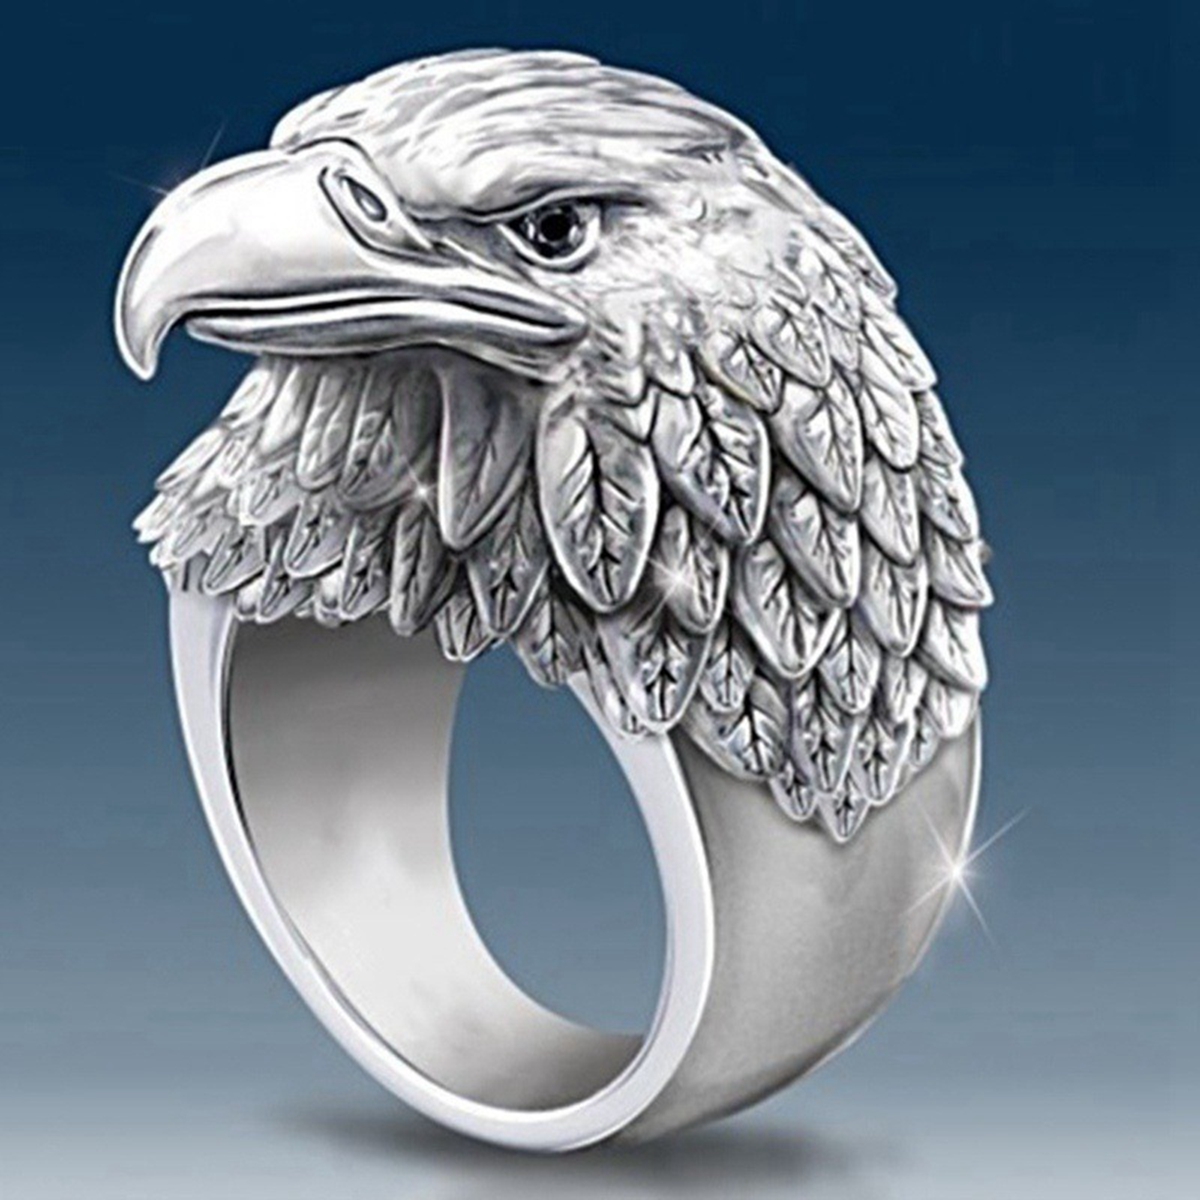 10 peças venda imperdível Anel de águia de liga de moda adequado para acessórios de festa de aniversário de homens europeus e americanos anéis tamanho 7-13 G-130